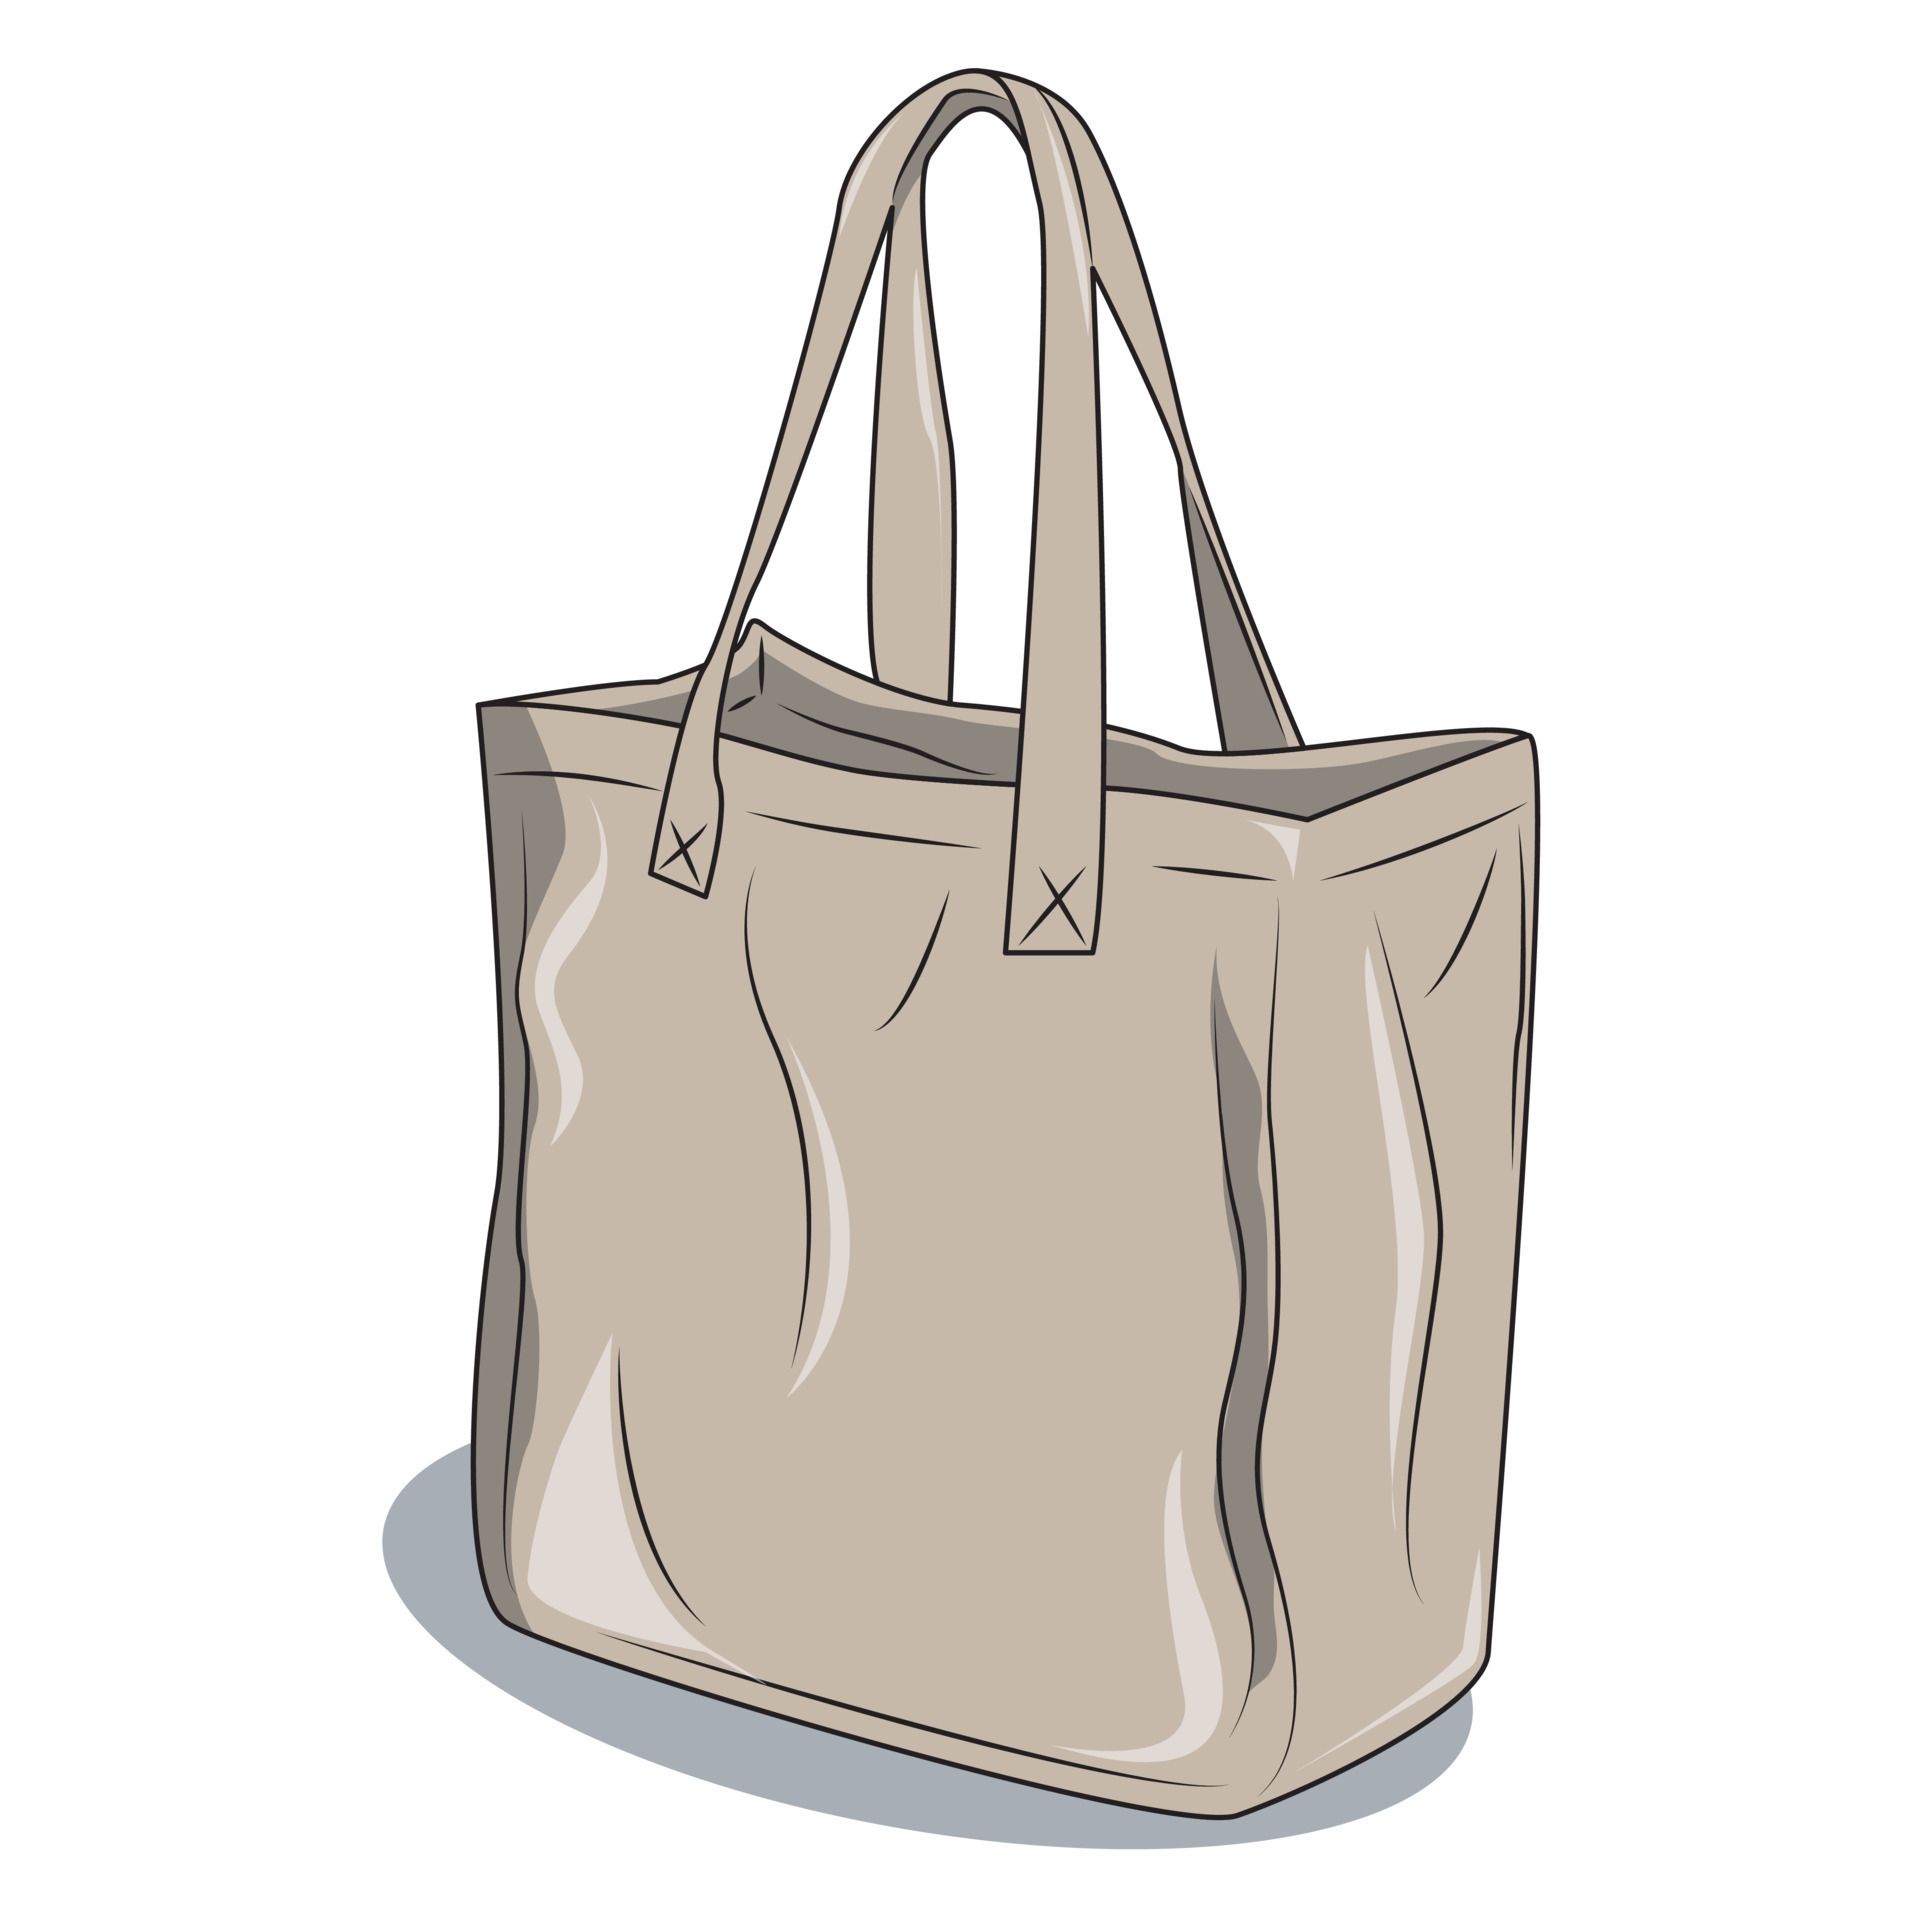 vector cartoon tote bag with a non-rigid shape. Fabric tote bag with  handle. Reusable tote bag for shopping. 13529978 Vector Art at Vecteezy